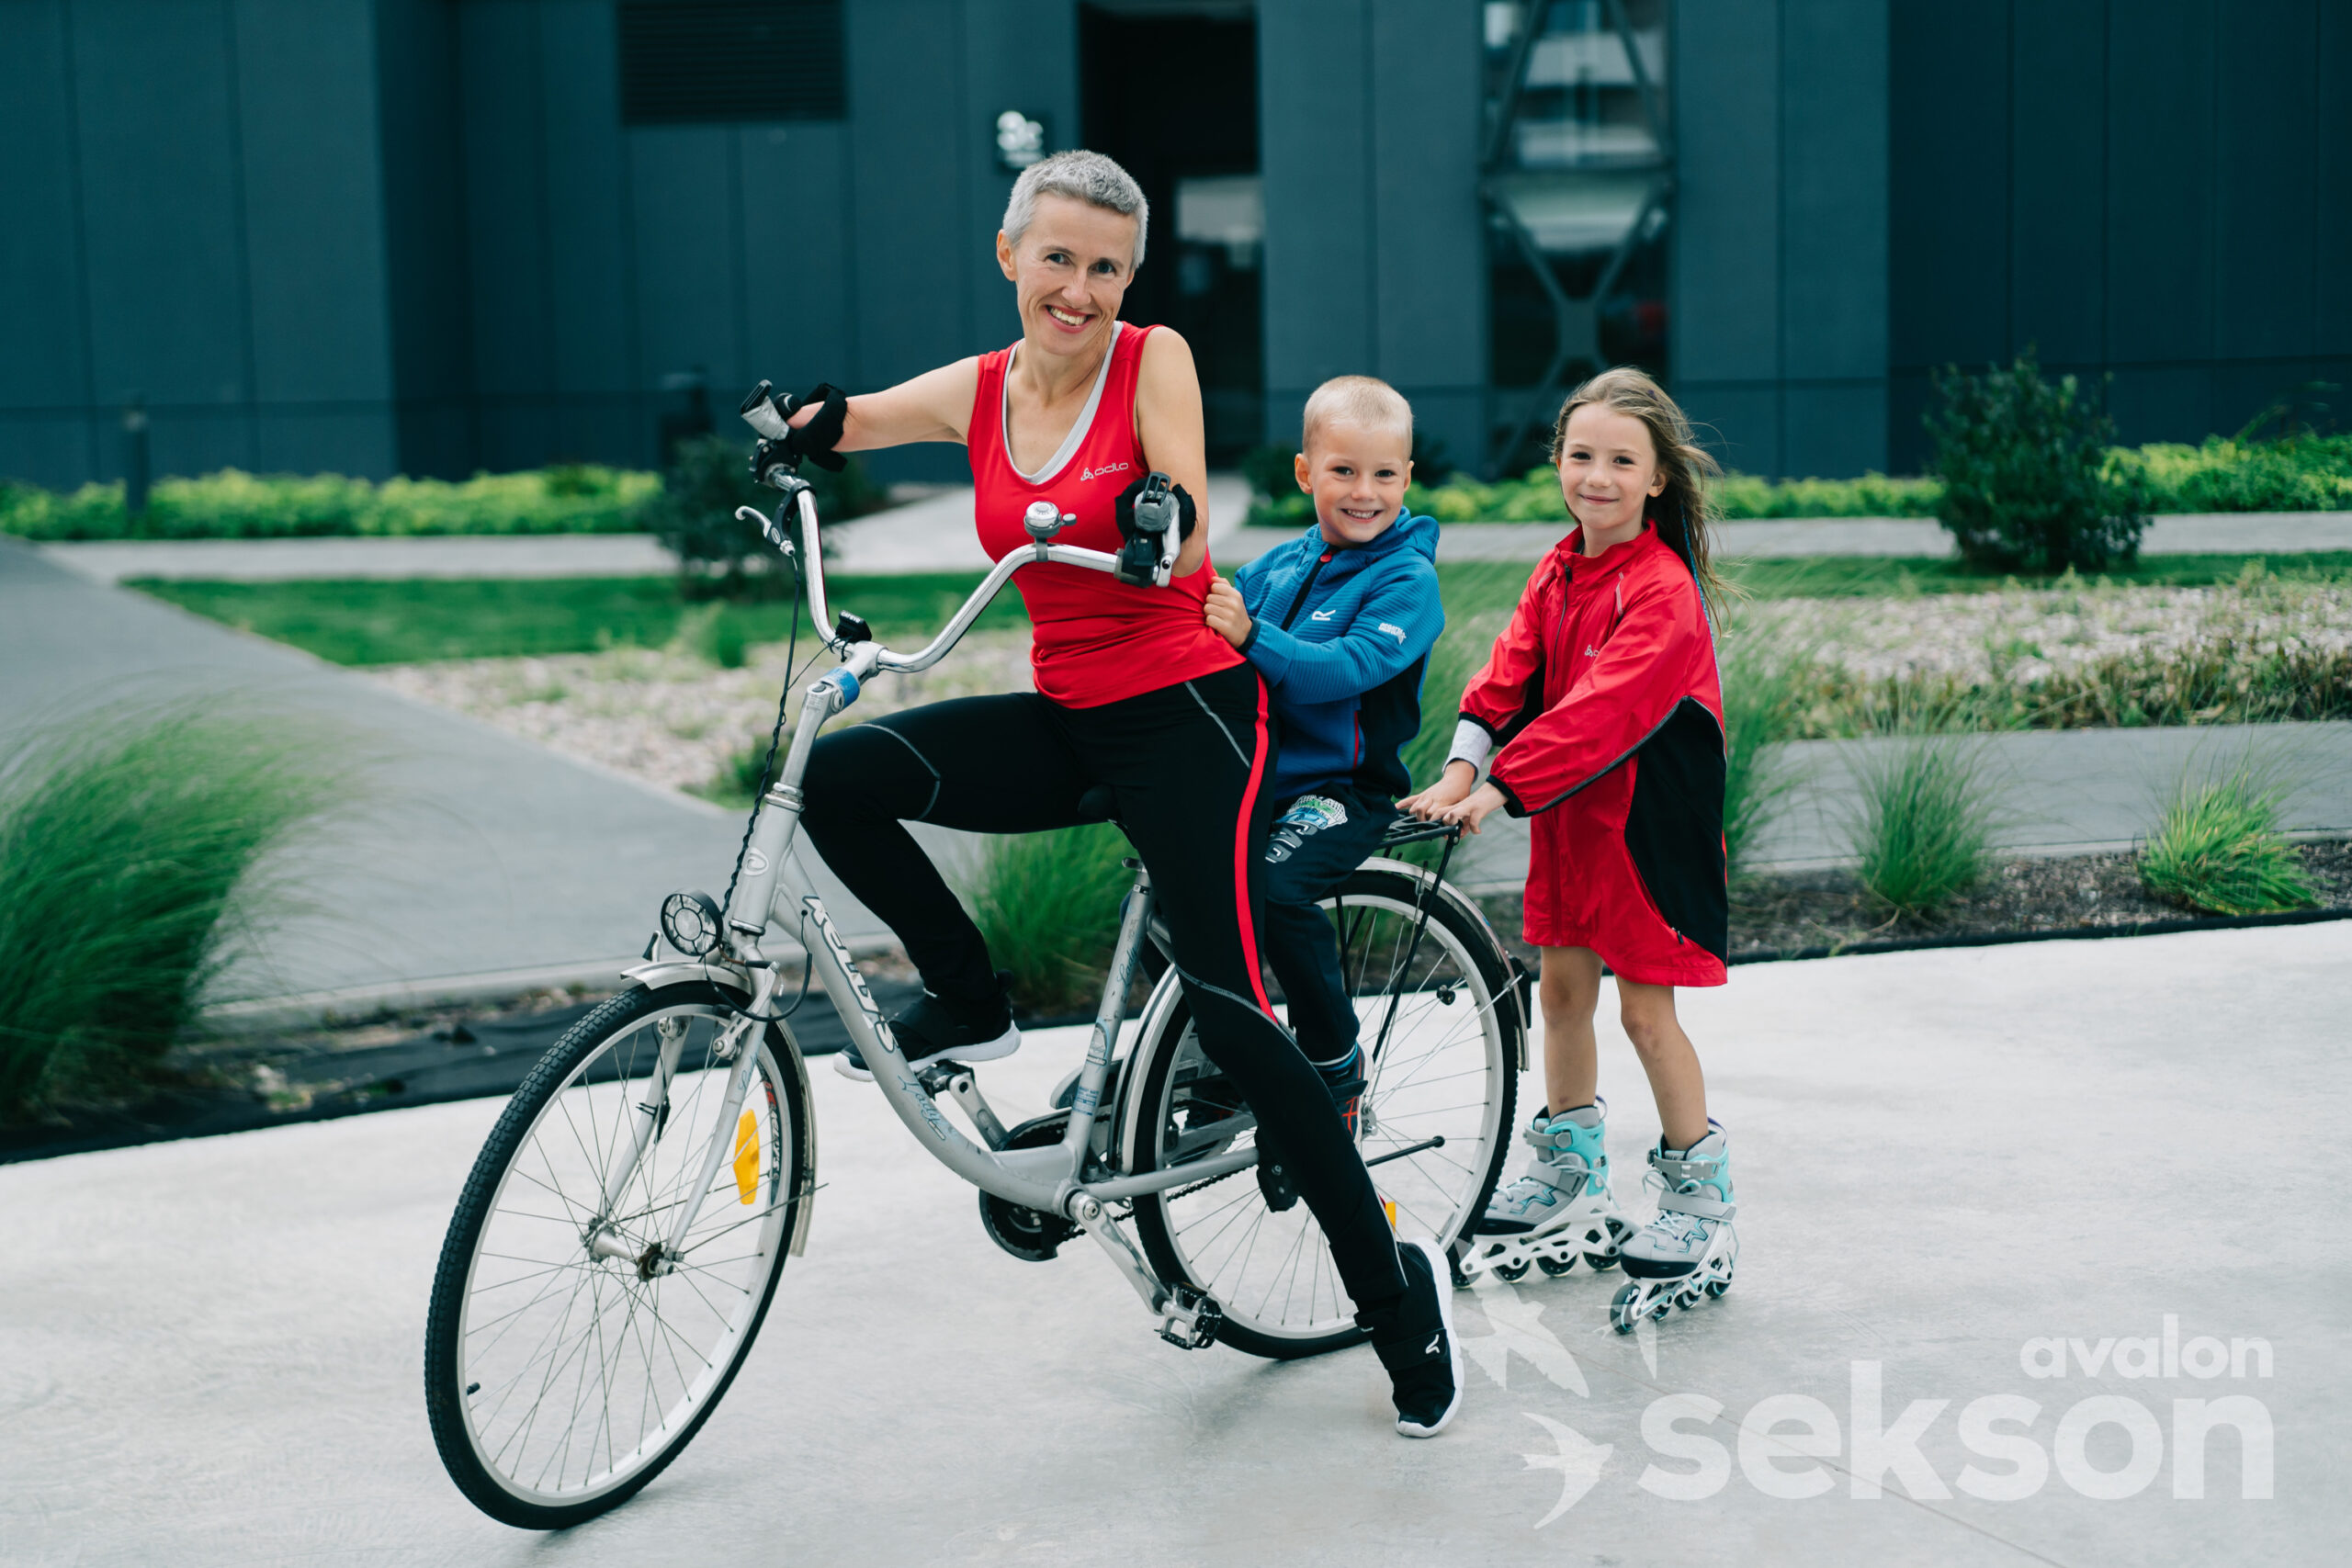 Na zdjęciu znajduje się uśmiechnięta Katarzyna Rogowiec, która jedzie rowerem. Na bagażniku siedzi mały chłopiec, a za nimi na rolkach jedzie trochę starsza dziewczynka.